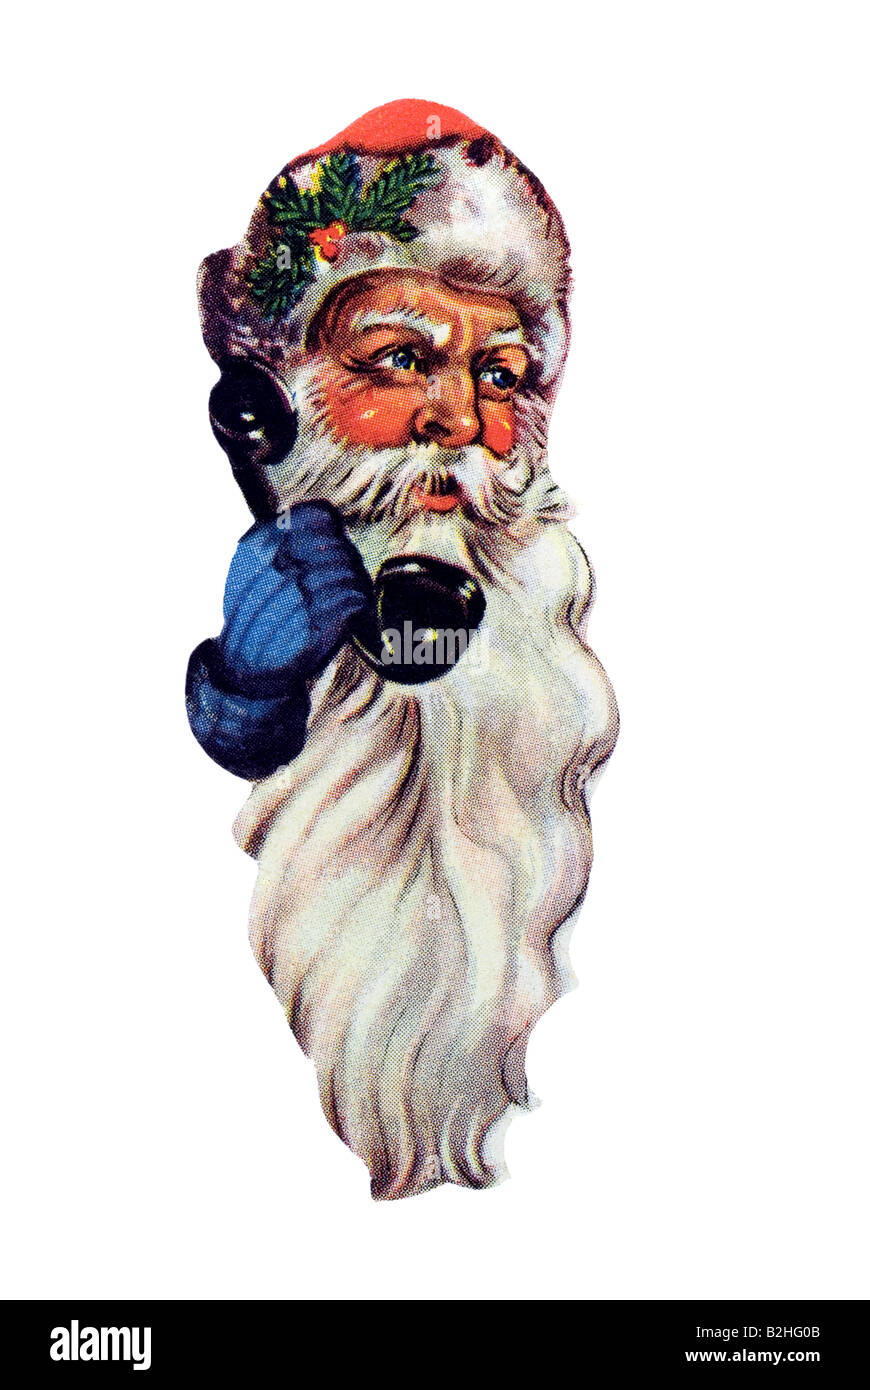 Le Père Noël à l'ancienne tête rouge et grande barbe blanche avec téléphone 20e siècle Allemagne Banque D'Images